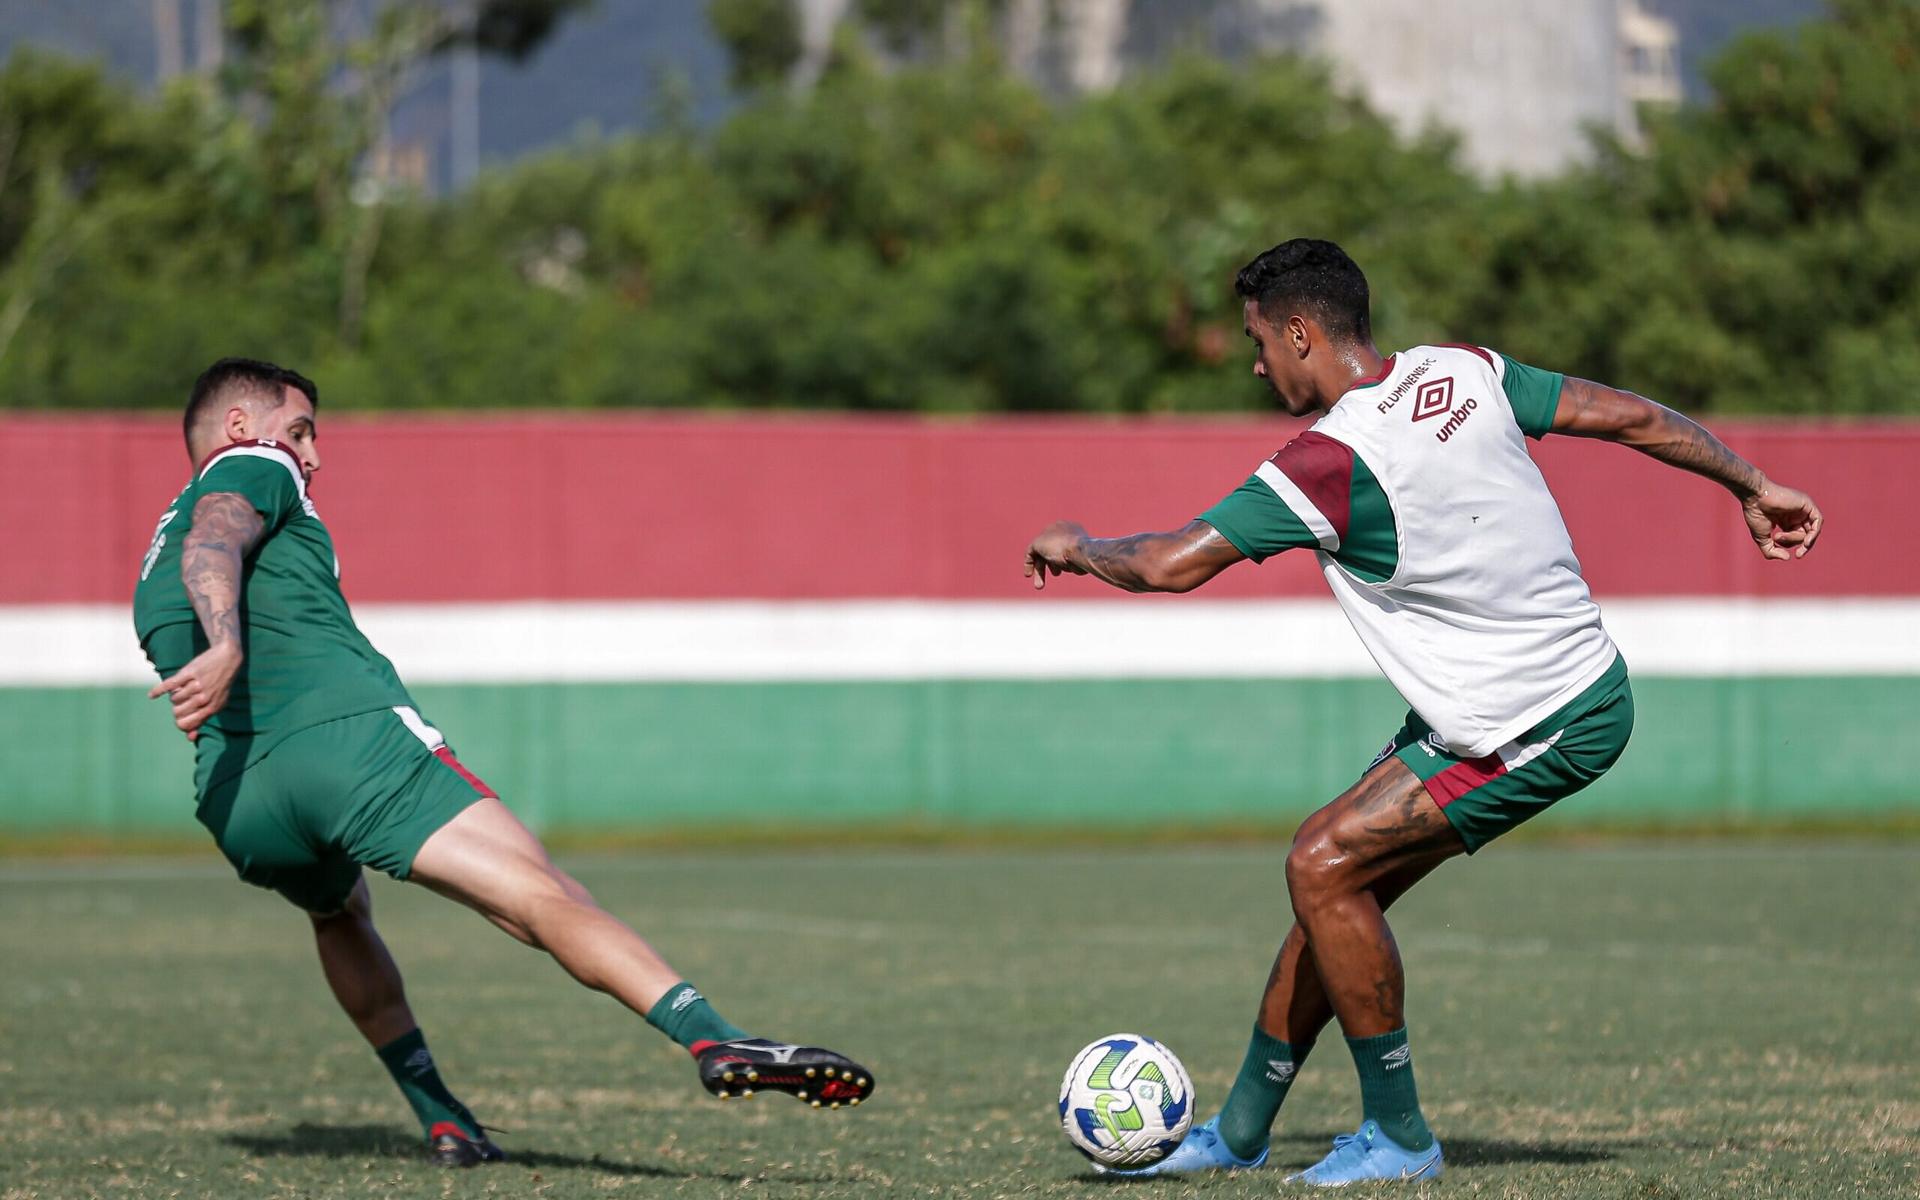 Treino-do-Fluminense-Renato-Augusto-e-Antonio-Carlos-scaled-aspect-ratio-512-320